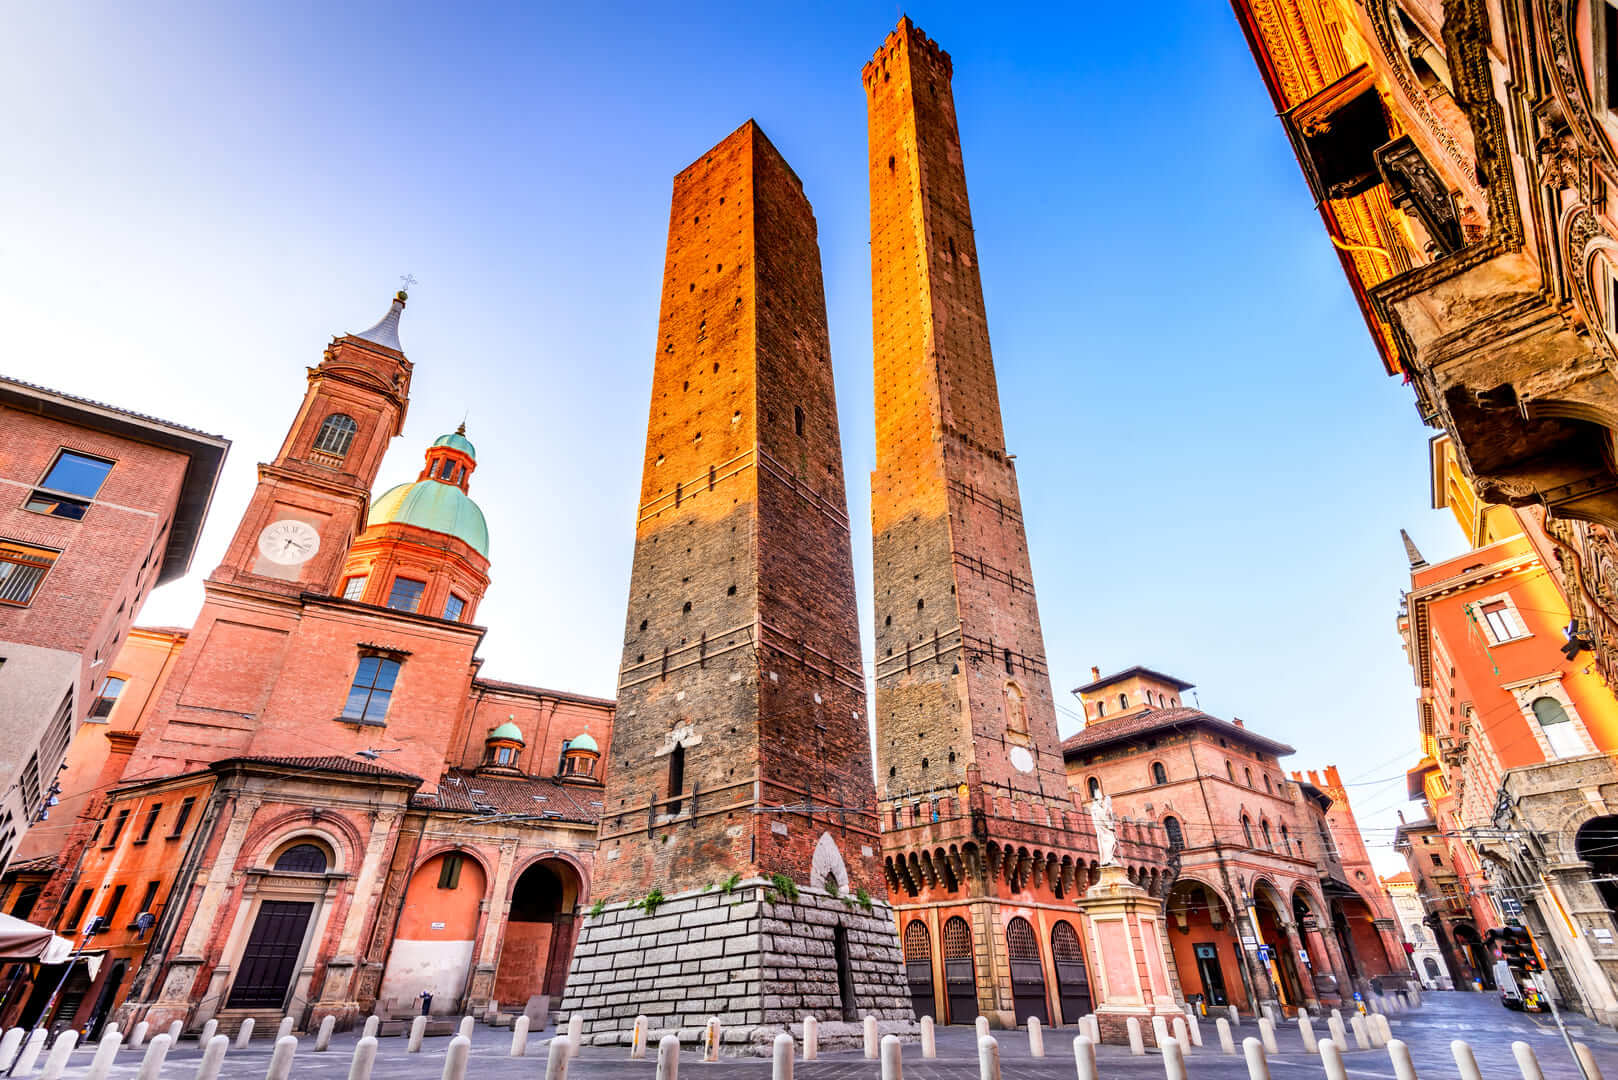 Болонья, Италия - Две башни (Due Torri), Асинелли и Гаризенда, символы башен средневековой Болоньи